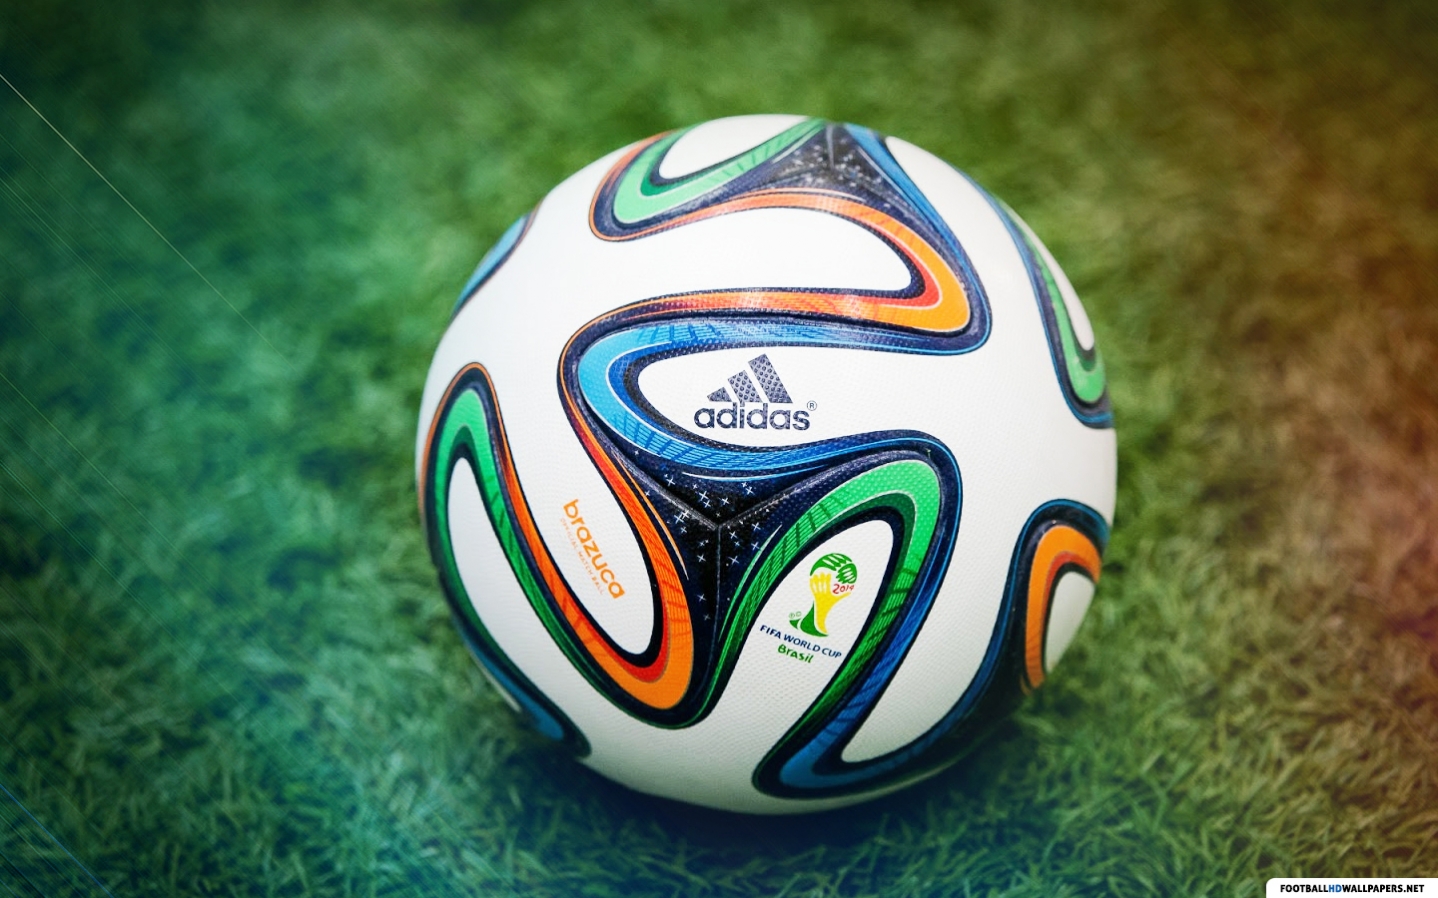 fond d'écran sur le thème du football,ballon de football,football,ballon de rugby,équipement sportif,pallone